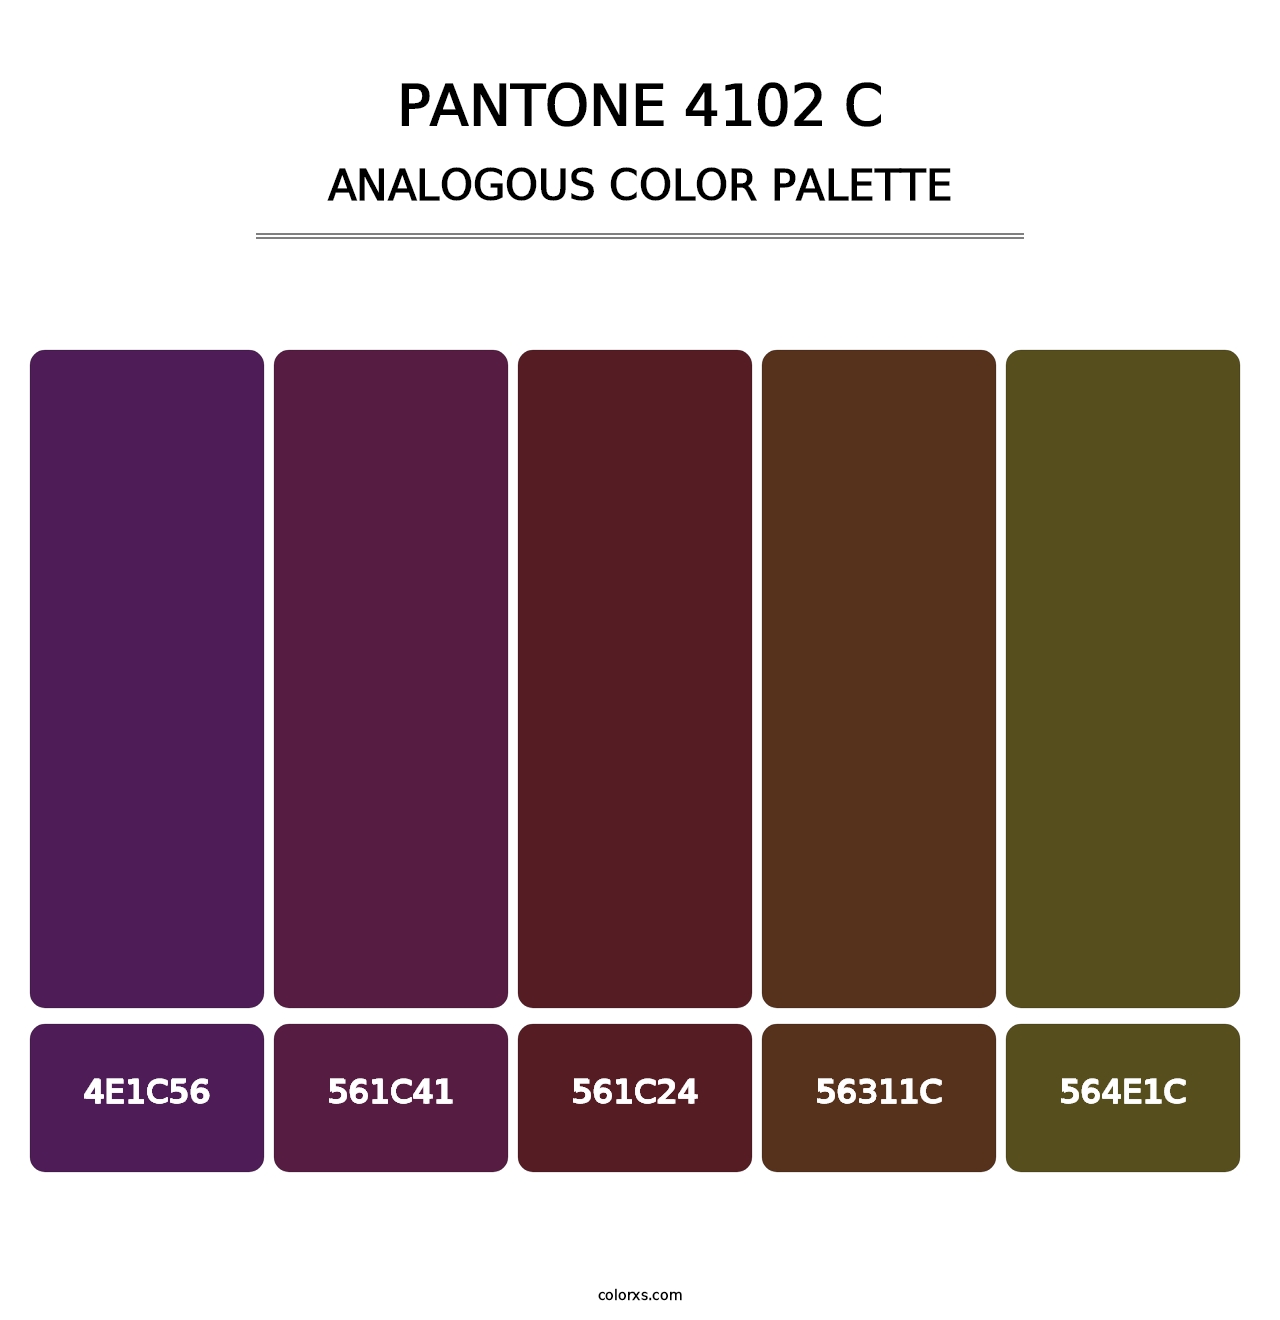 PANTONE 4102 C - Analogous Color Palette